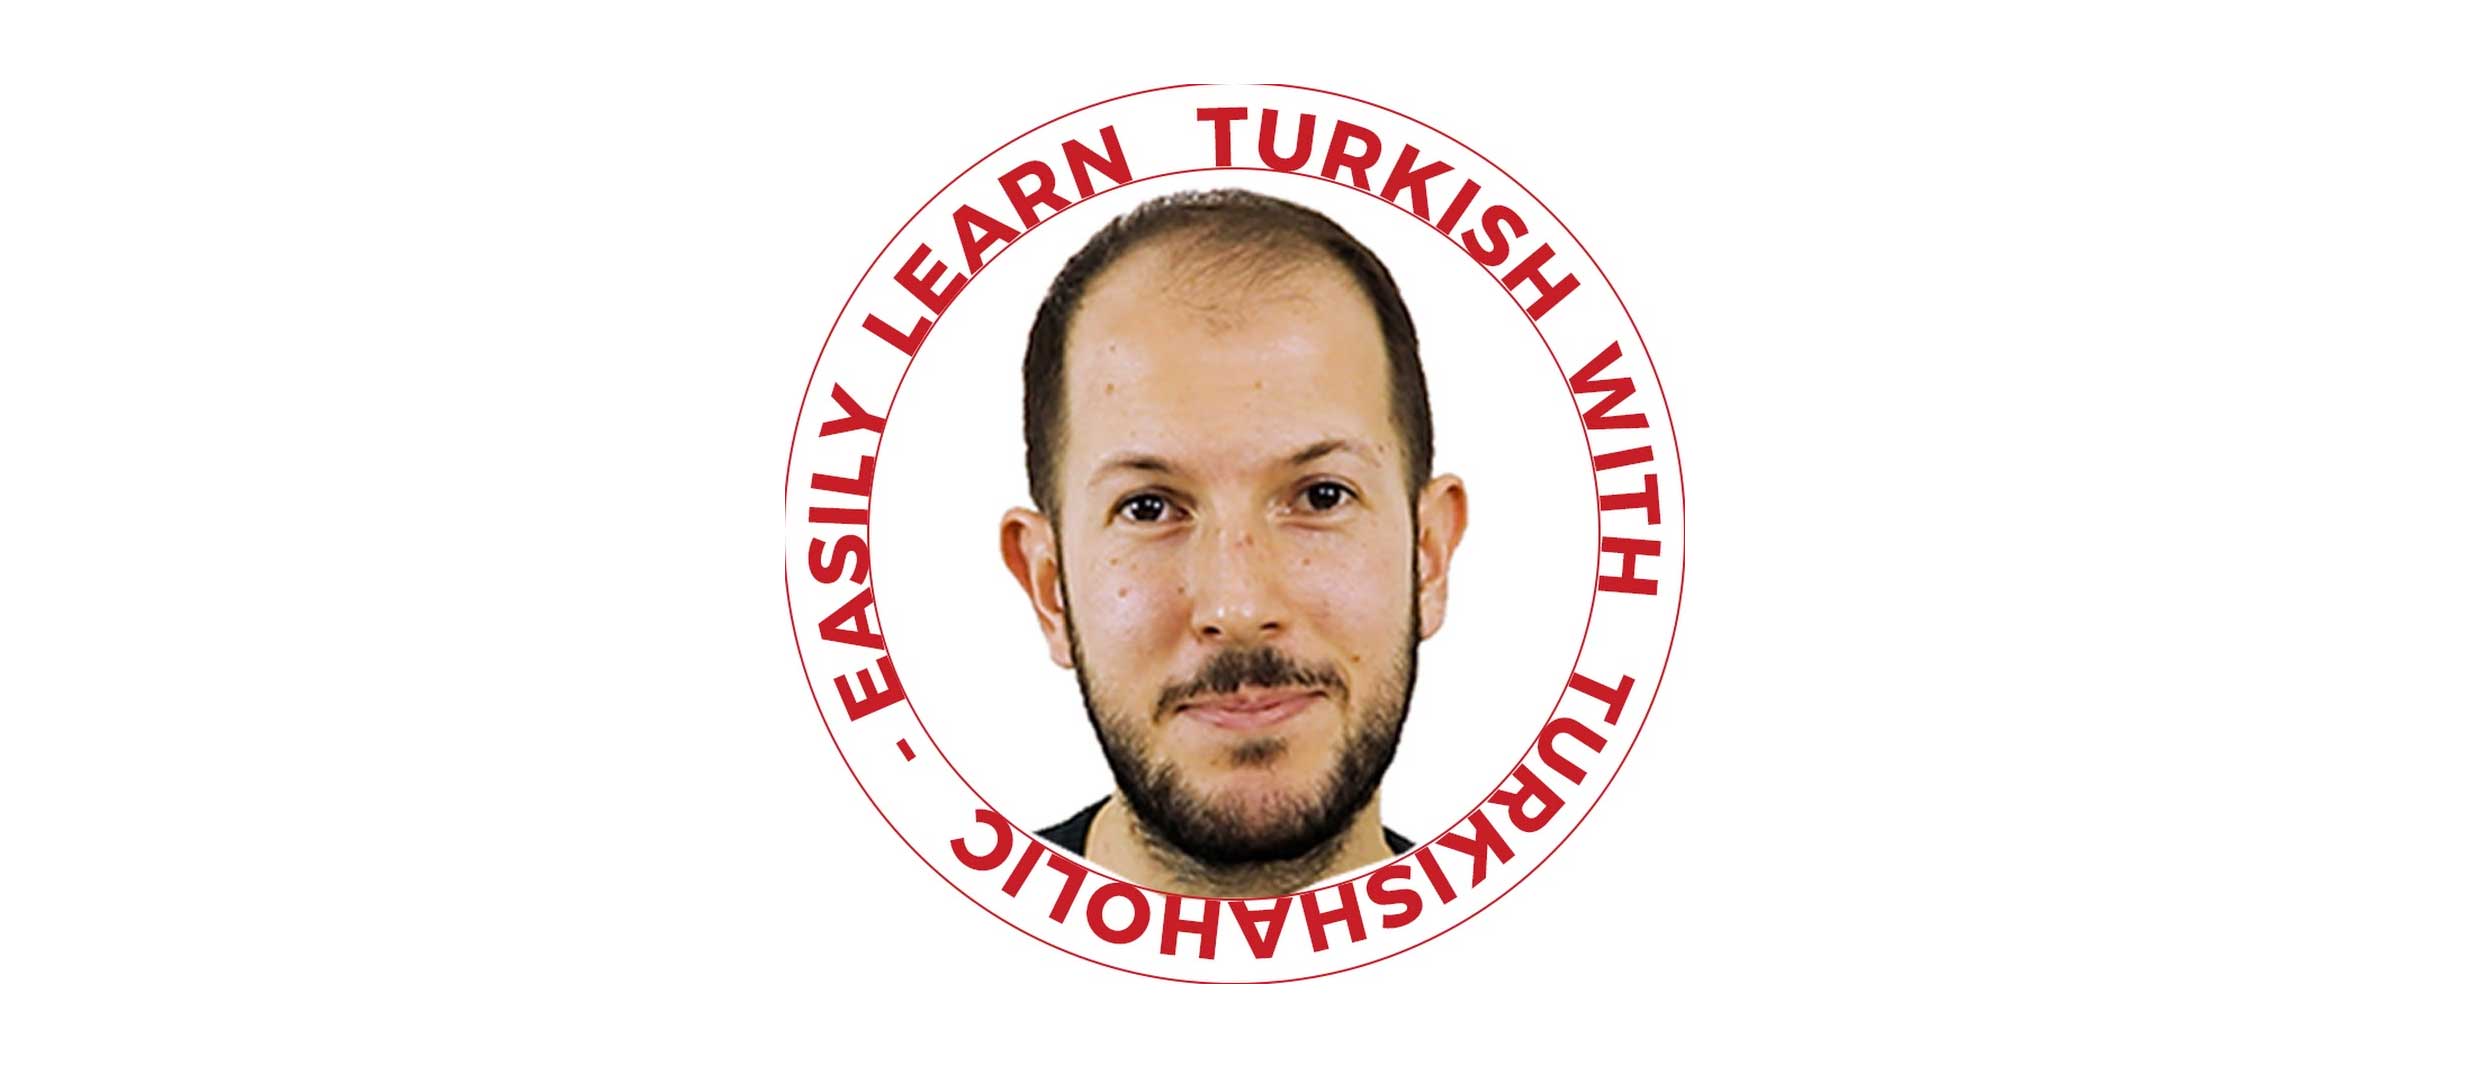 Learn Turkish With Turkishaholic